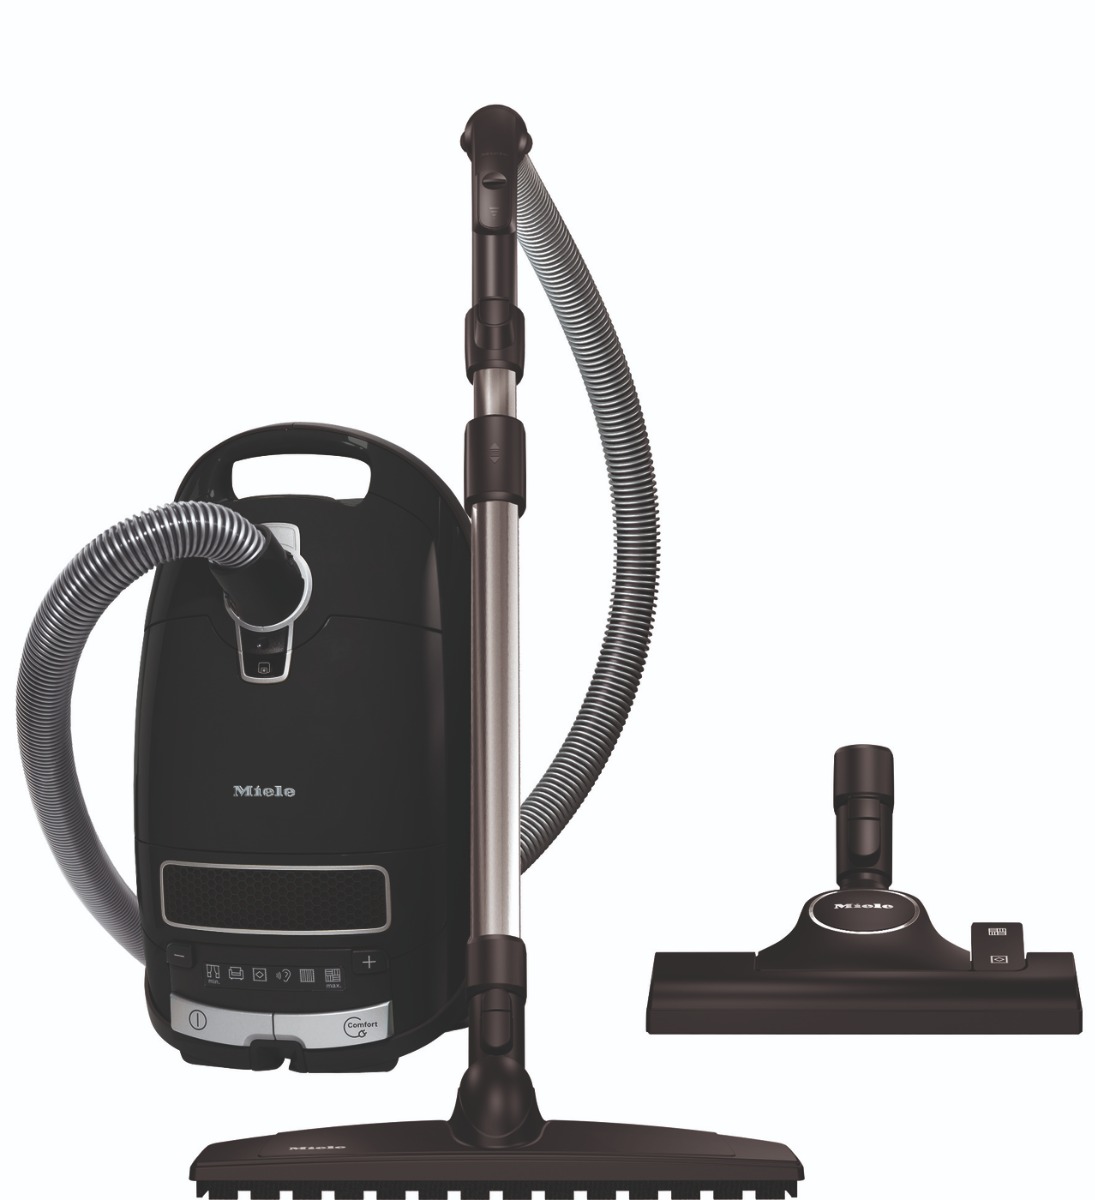 Miele Complete C3 Powerline Vacuum cleaner black/270/